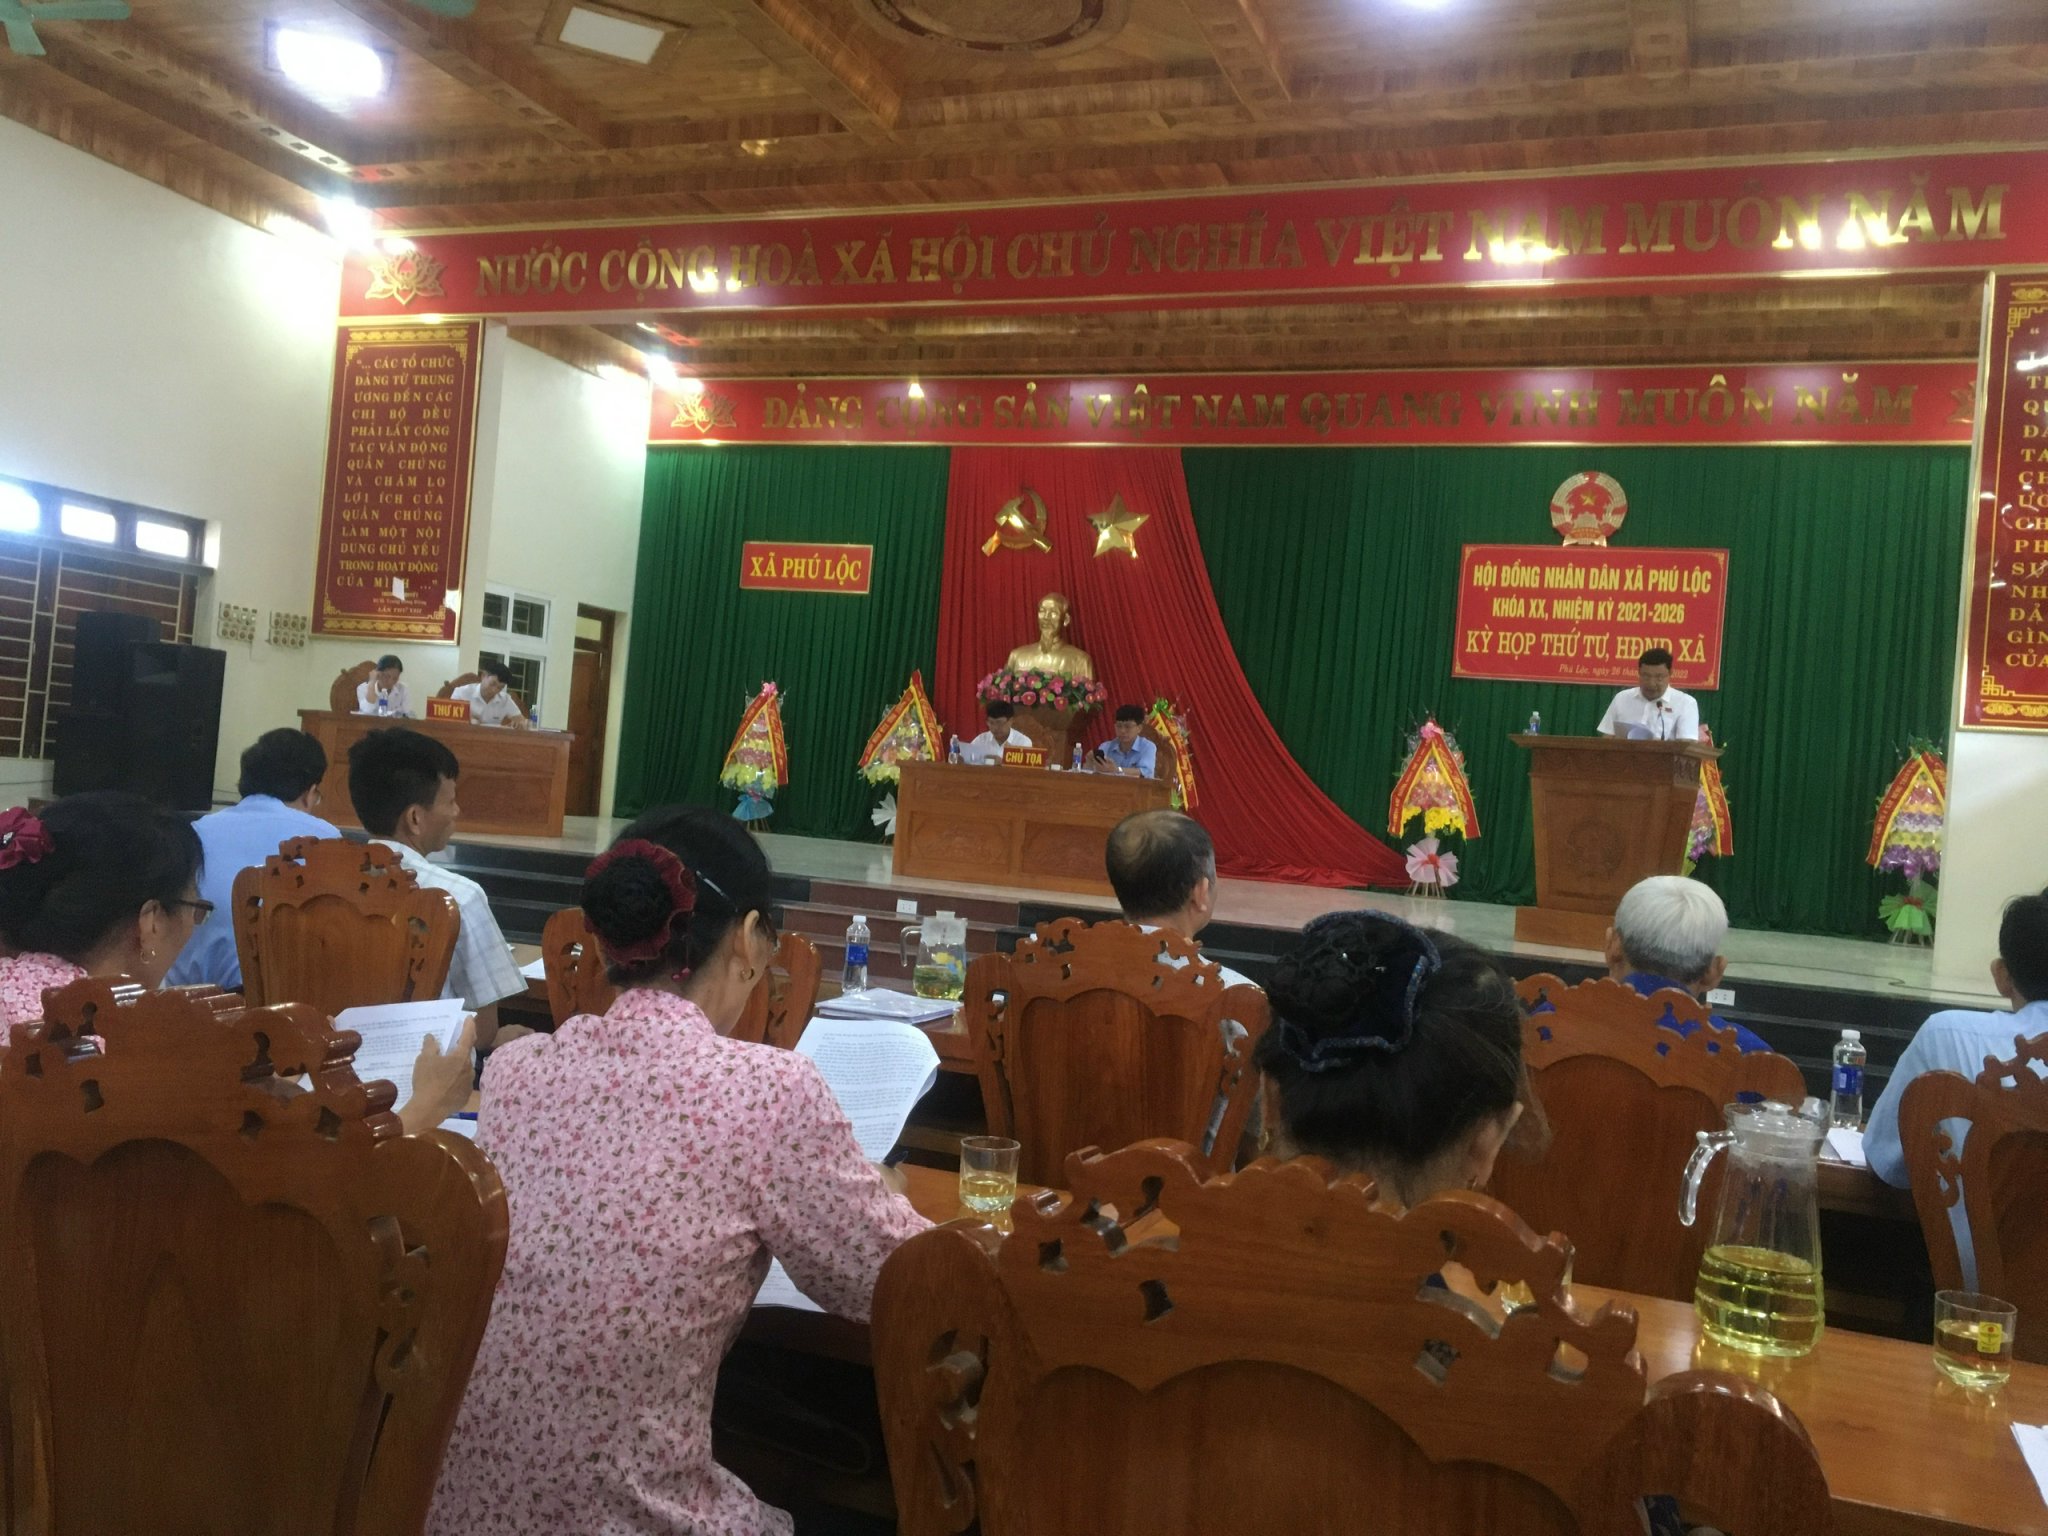 Hội đồng nhân dân xã khoá XX, tổ chức kỳ họp thứ 4